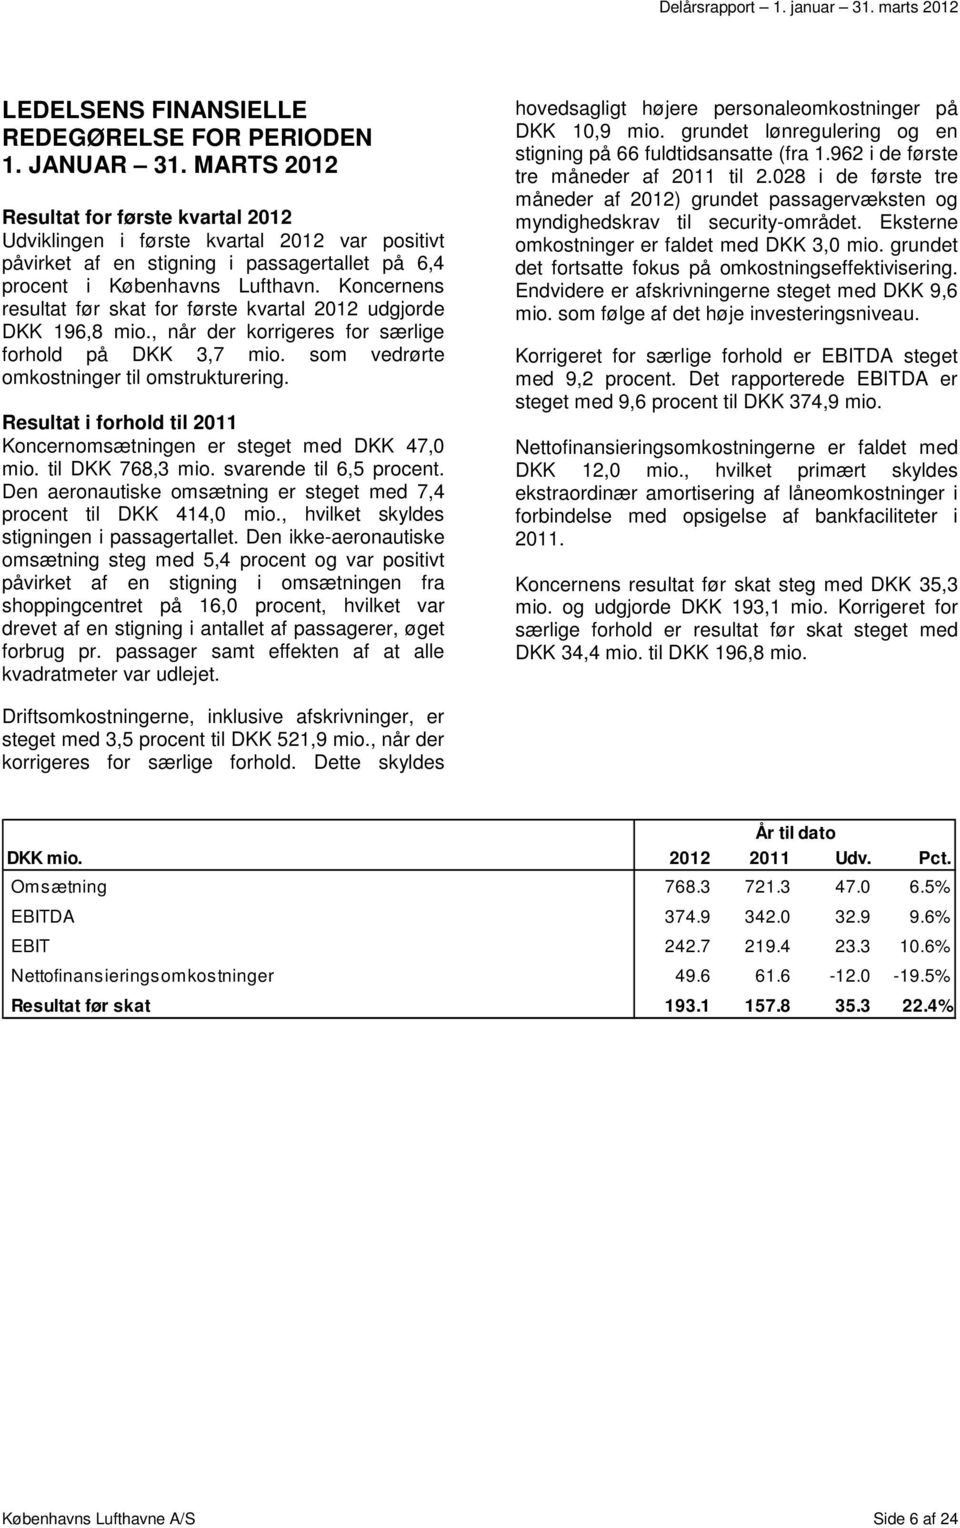 Koncernens resultat før skat for første kvartal 2012 udgjorde DKK 196,8 mio., når der korrigeres for særlige forhold på DKK 3,7 mio. som vedrørte omkostninger til omstrukturering.